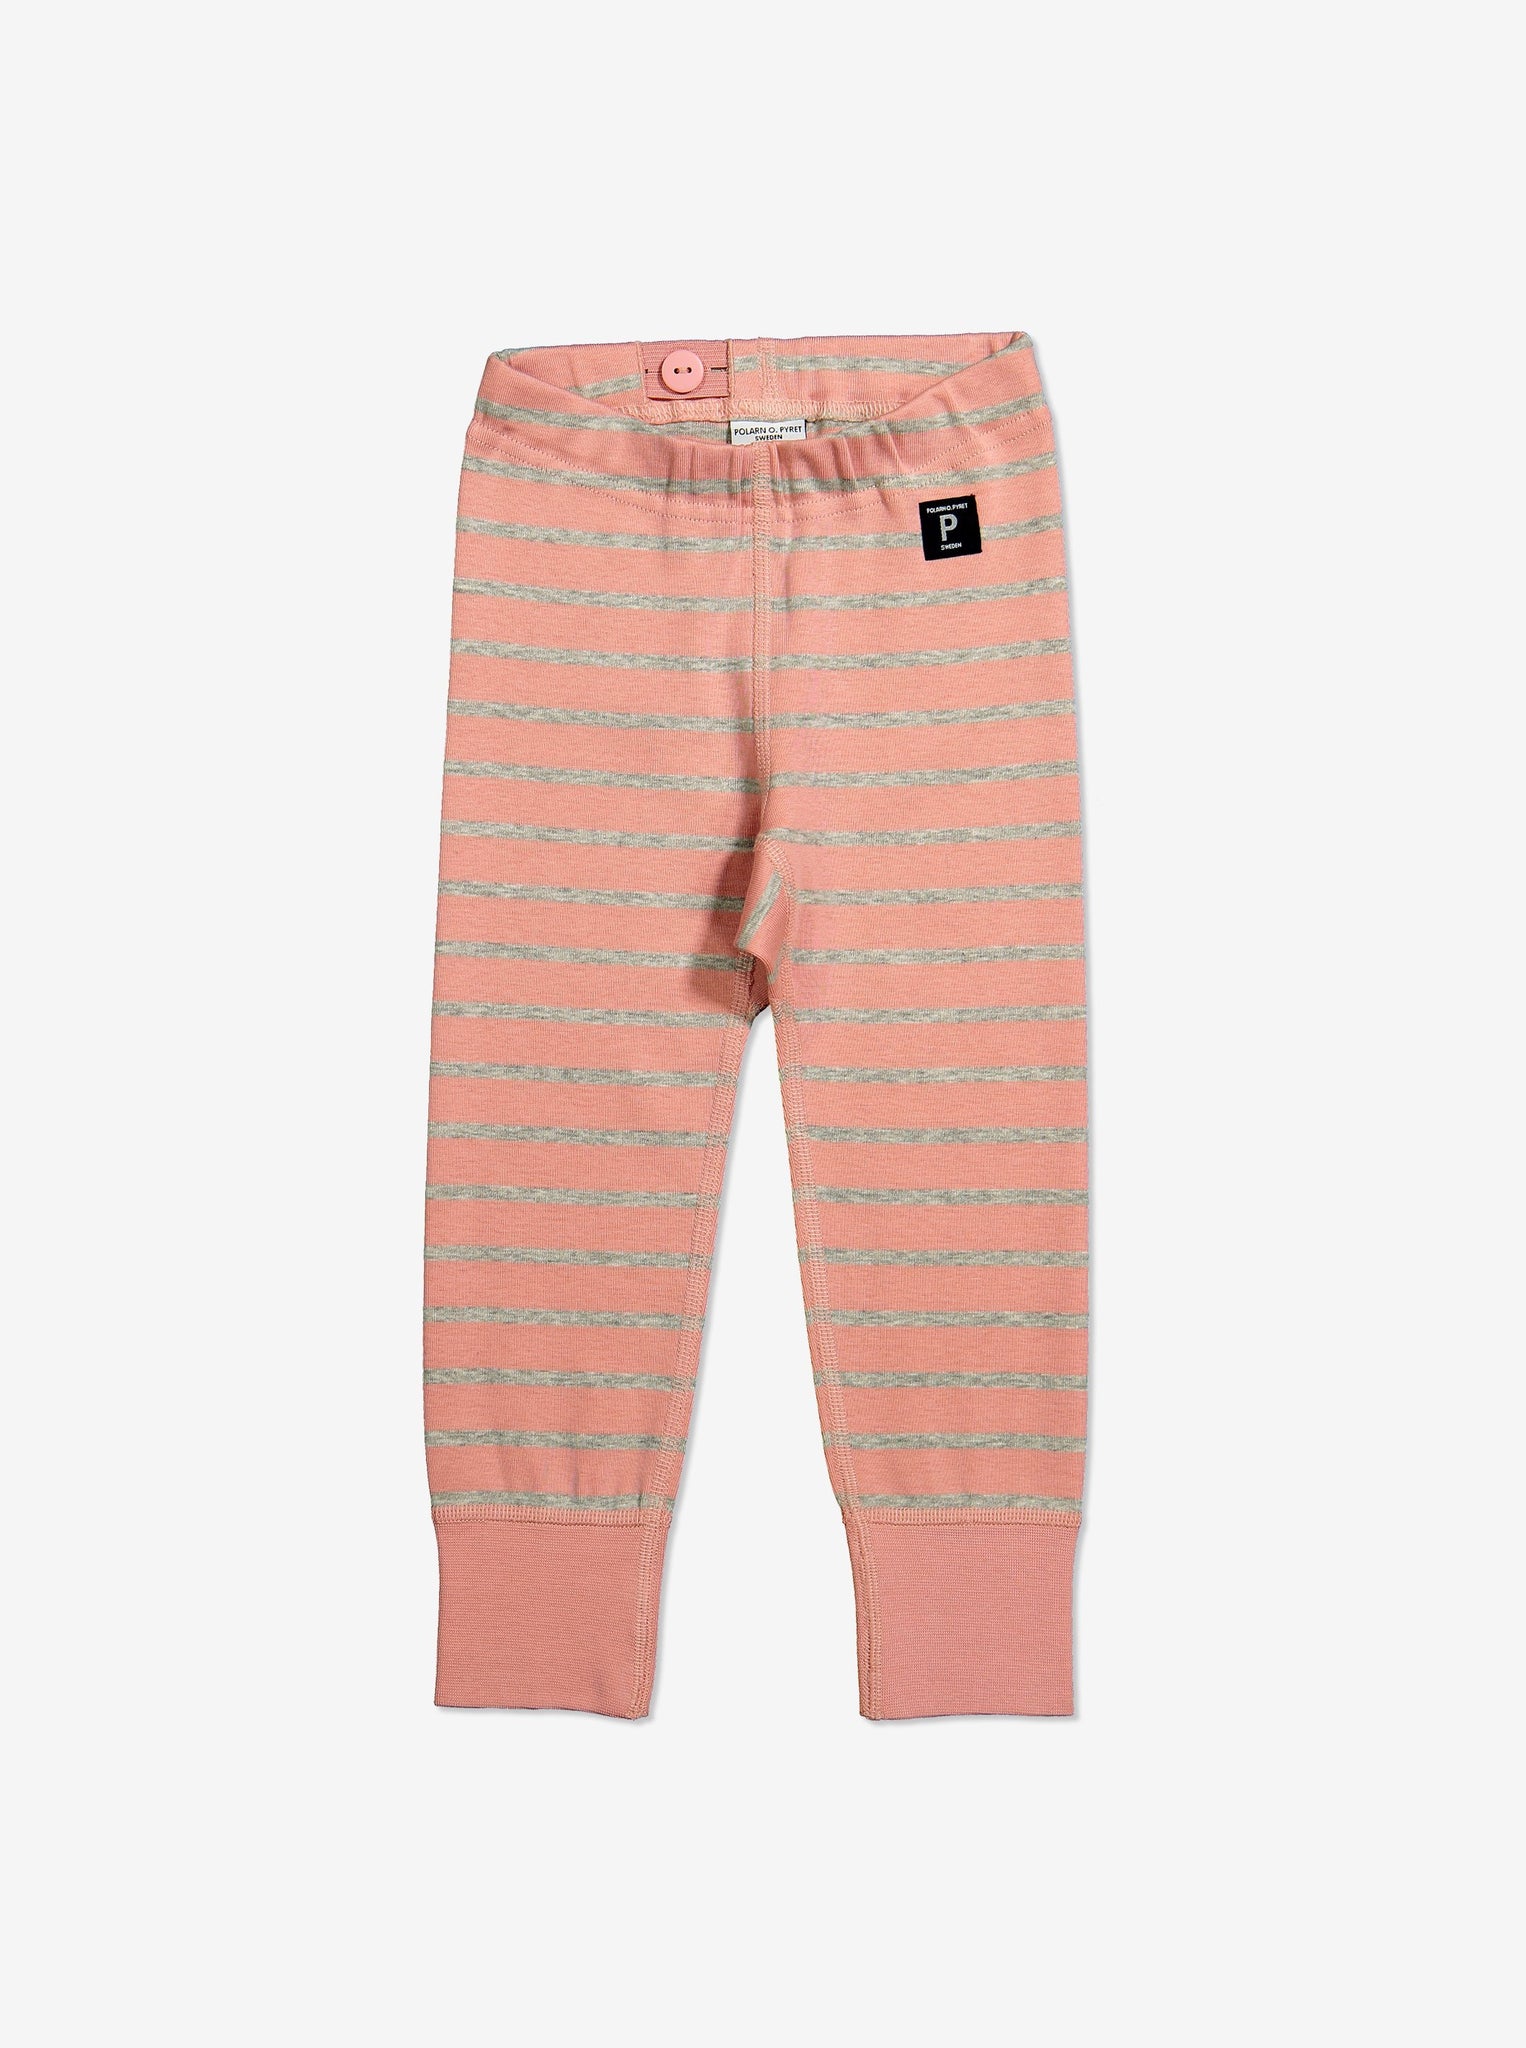 Striped Kids Leggings-Girl-1-6y-Pink